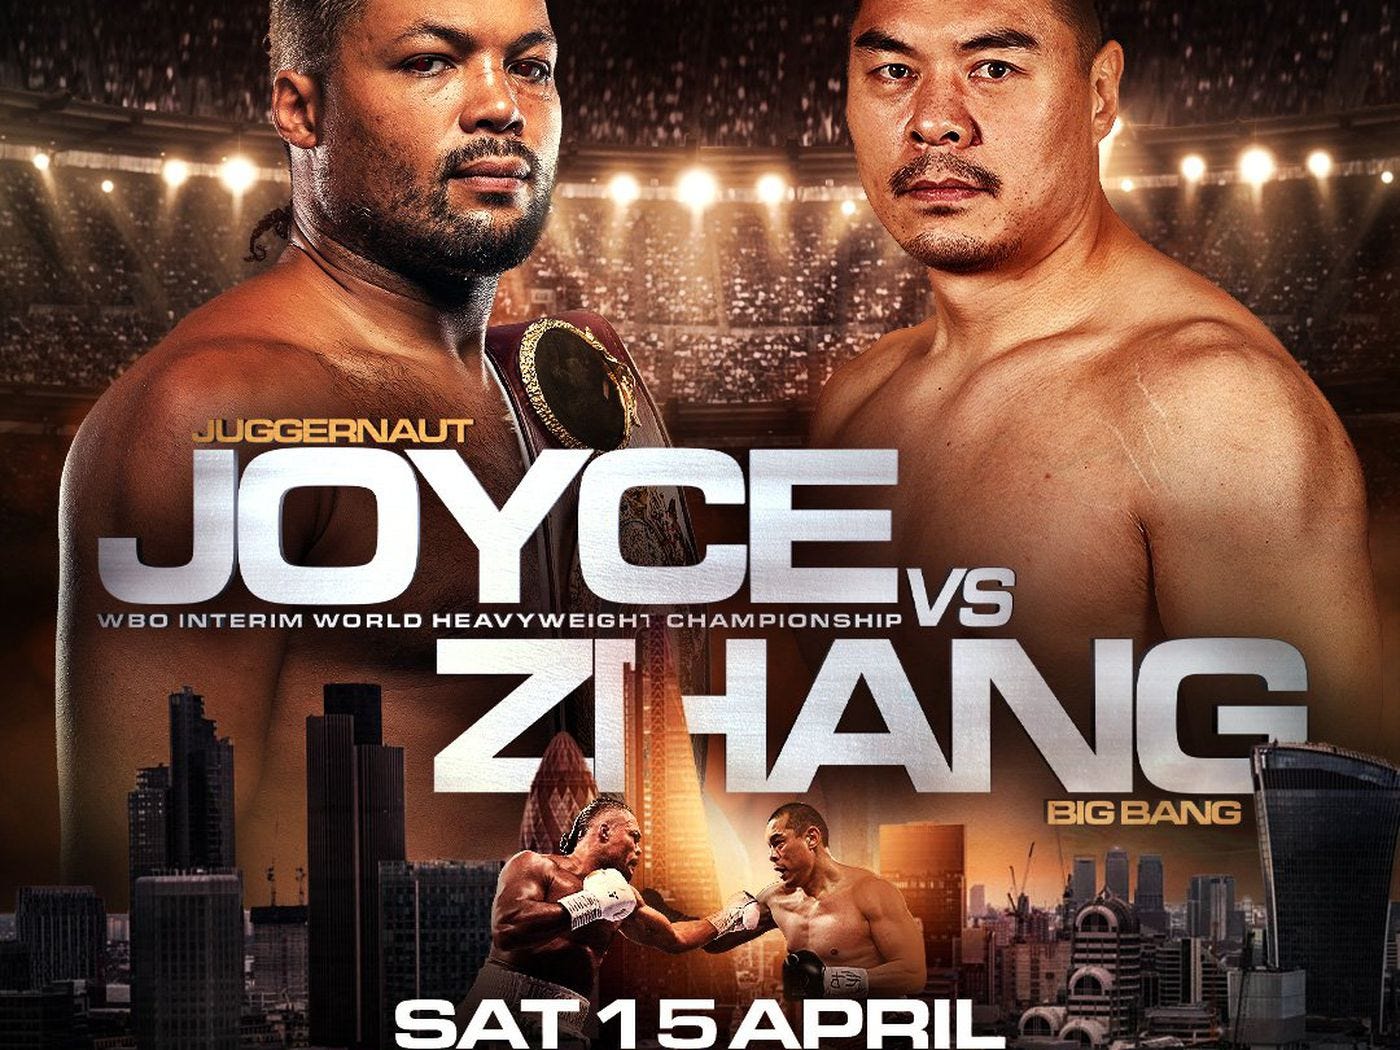 How to watch Joe Joyce vs Zhilei Zhang: Boxing schedule April 13-15 - Bad  Left Hook